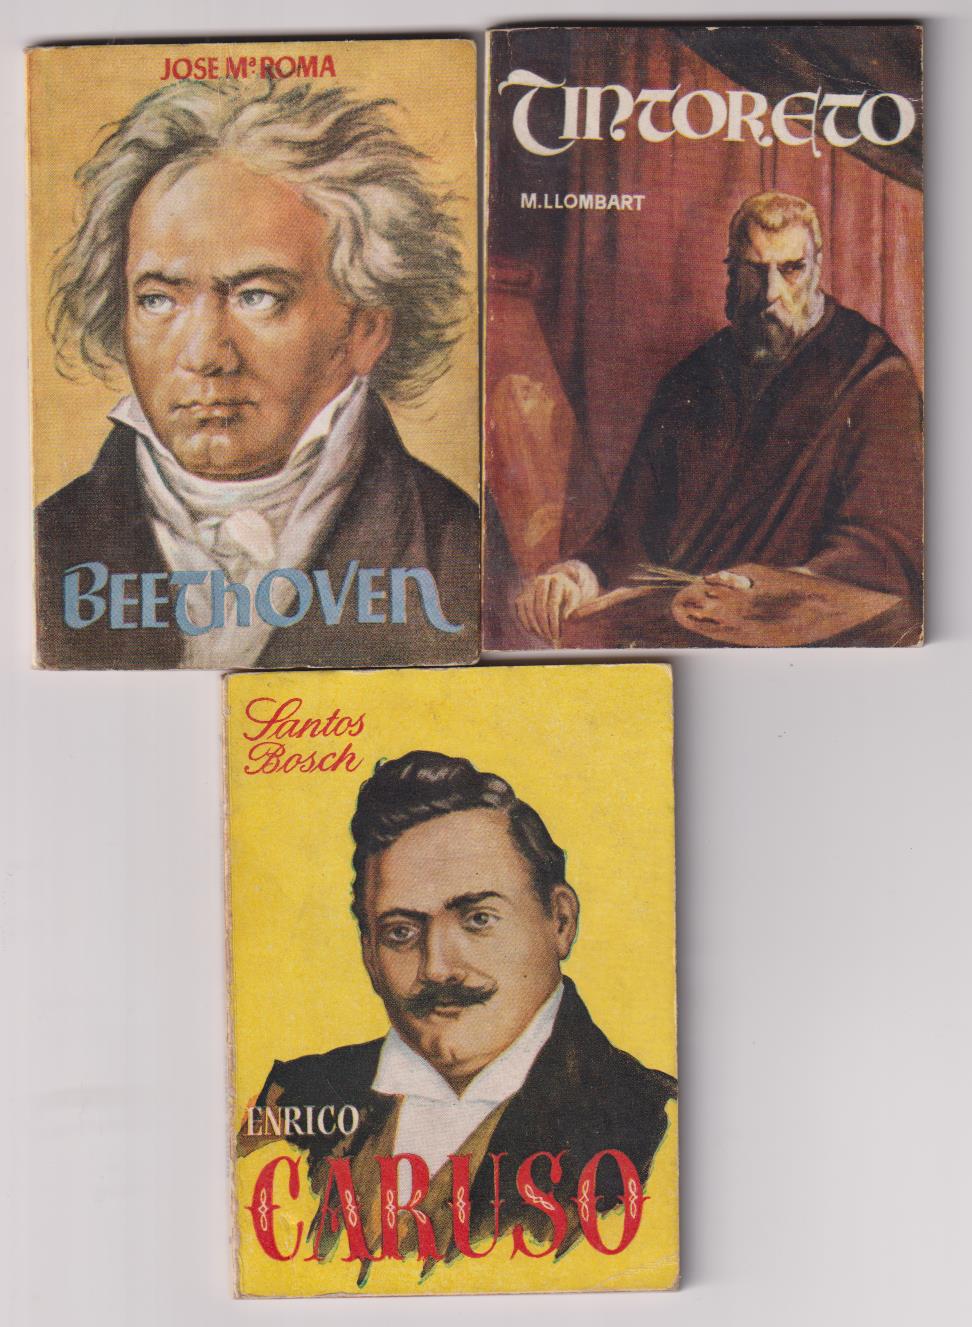 Enciclopedia Pulga. Lote de 3 ejemplares: 1, 48, y 353. Caruso, Beethoven y Tintoreto